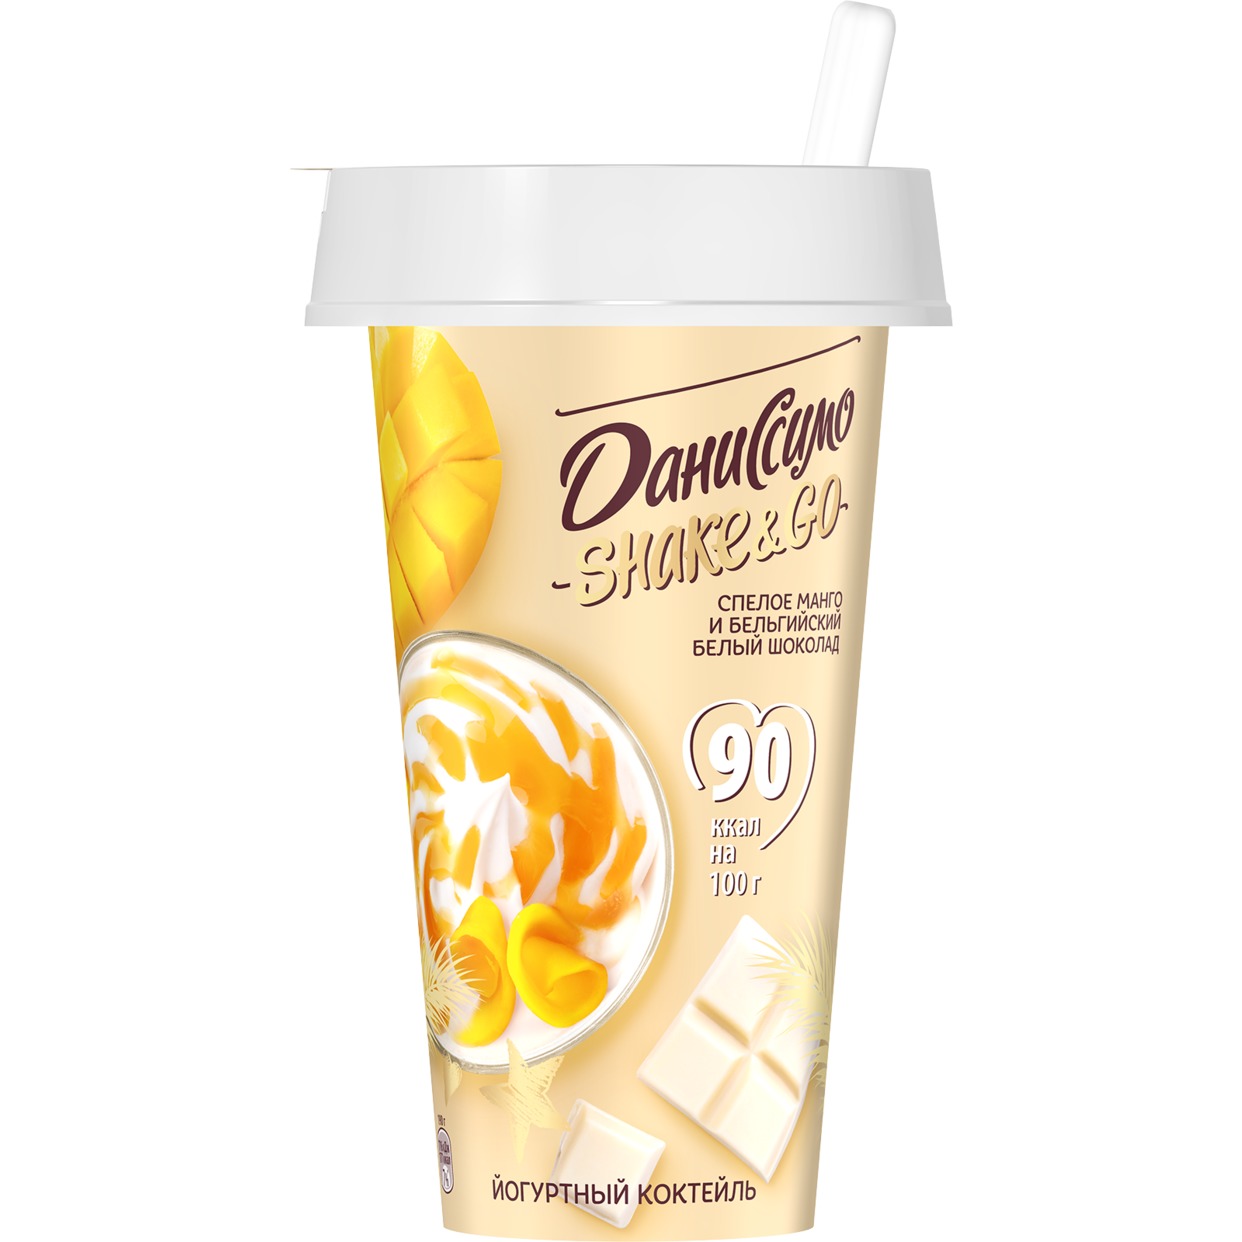 БЗМЖ Даниссимо Коктейль кисломолочный йогуртный с наполнителем «Спелое манго и бельгийский белый шоколад», 190г 2,7% по акции в Пятерочке